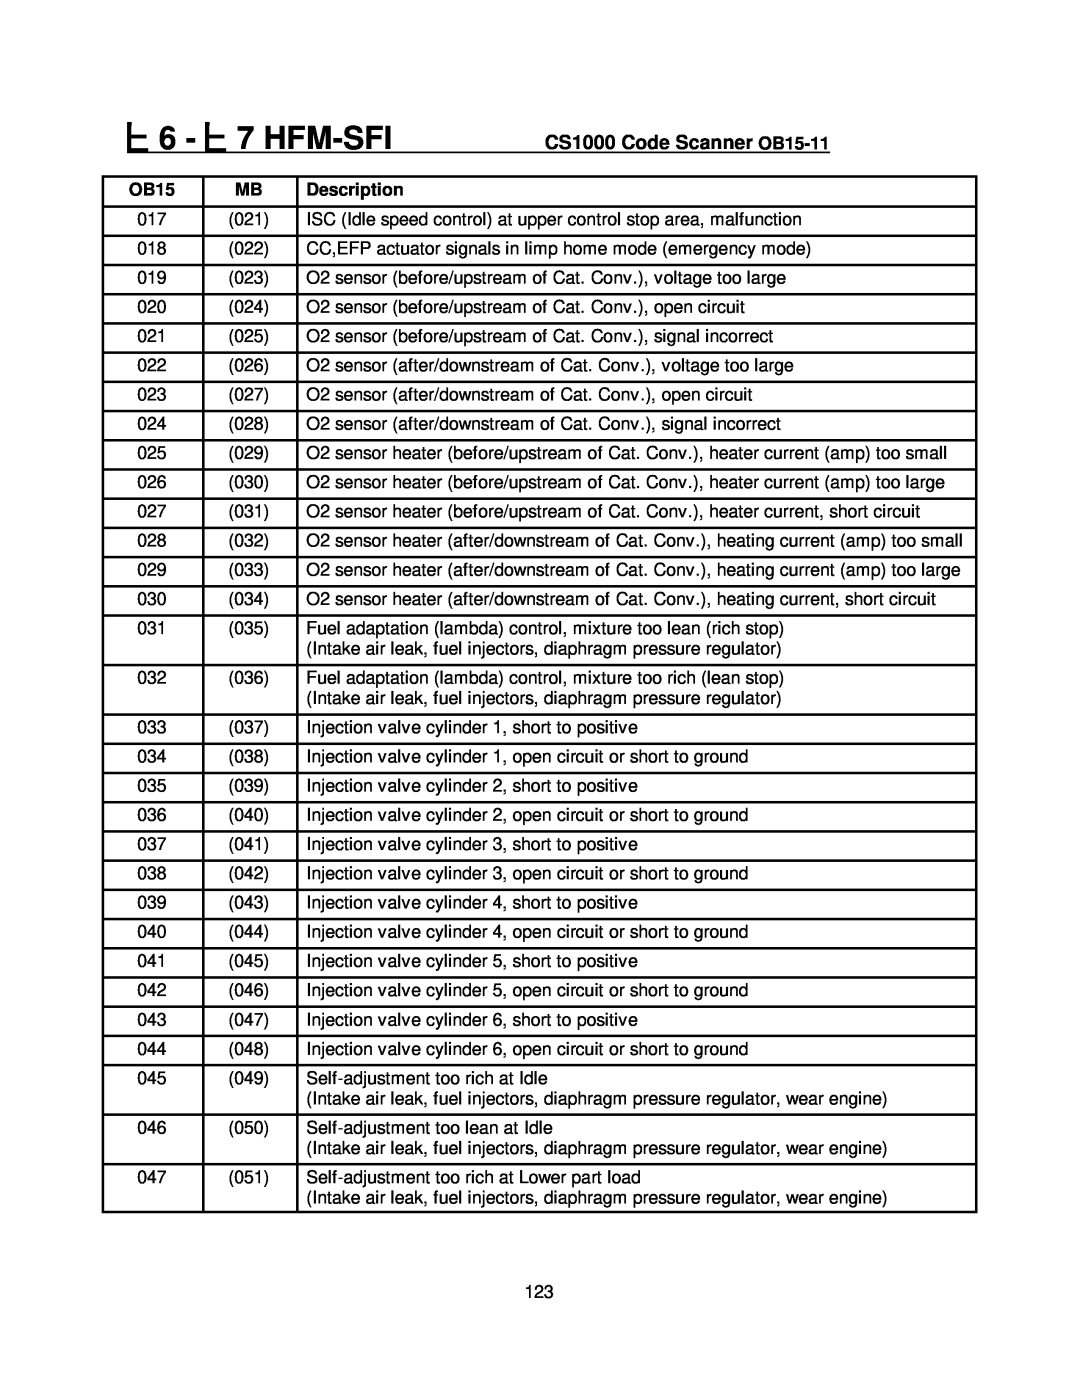 Mercedes-Benz manual 6 - 7 HFM-SFI, CS1000 Code Scanner OB15-11, Description 